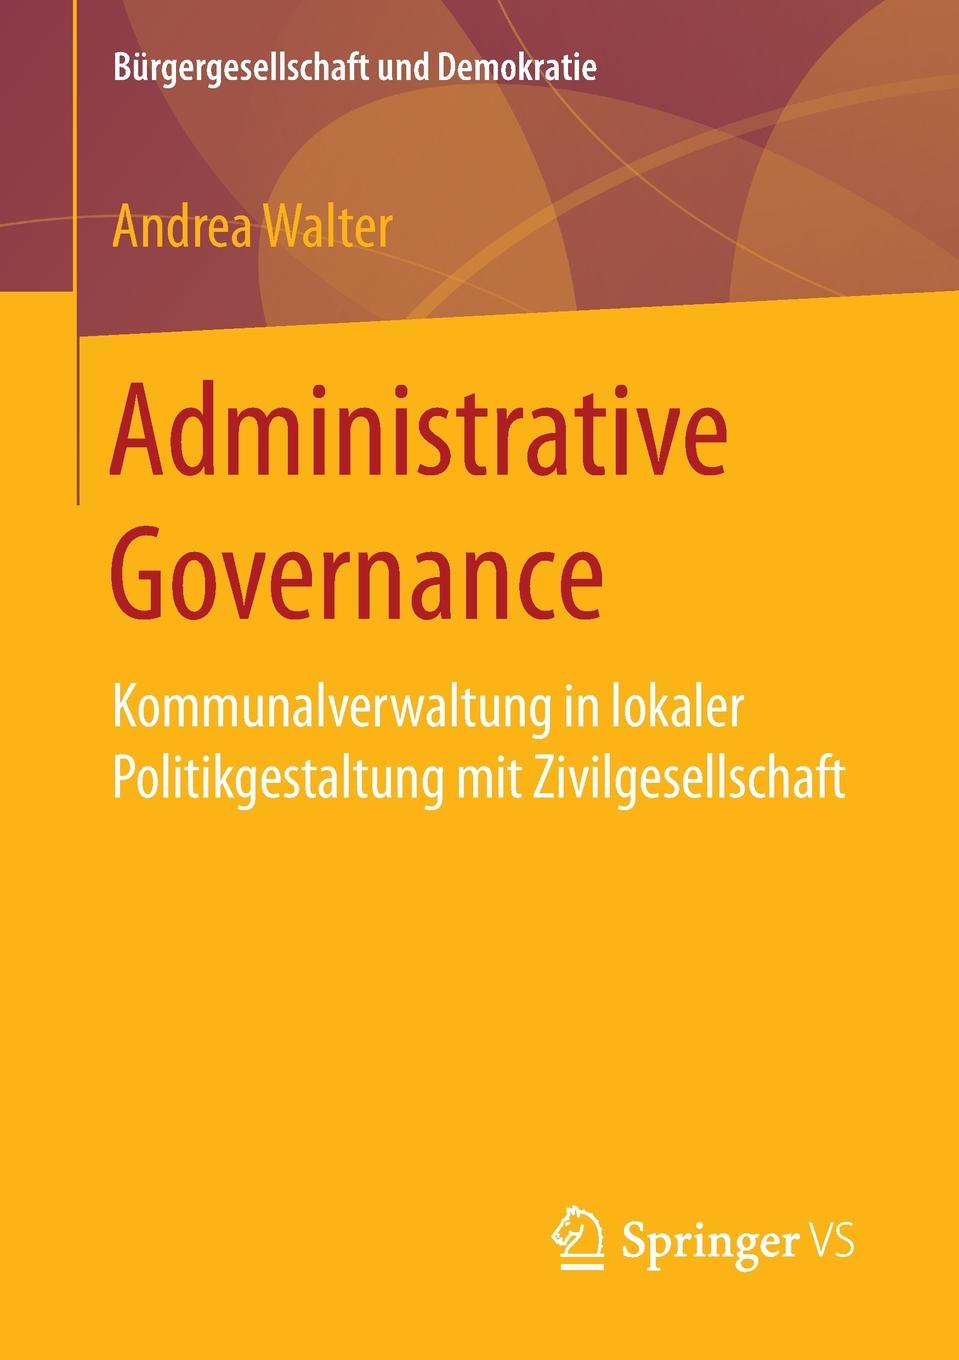 Administrative Governance. Kommunalverwaltung in lokaler Politikgestaltung mit Zivilgesellschaft